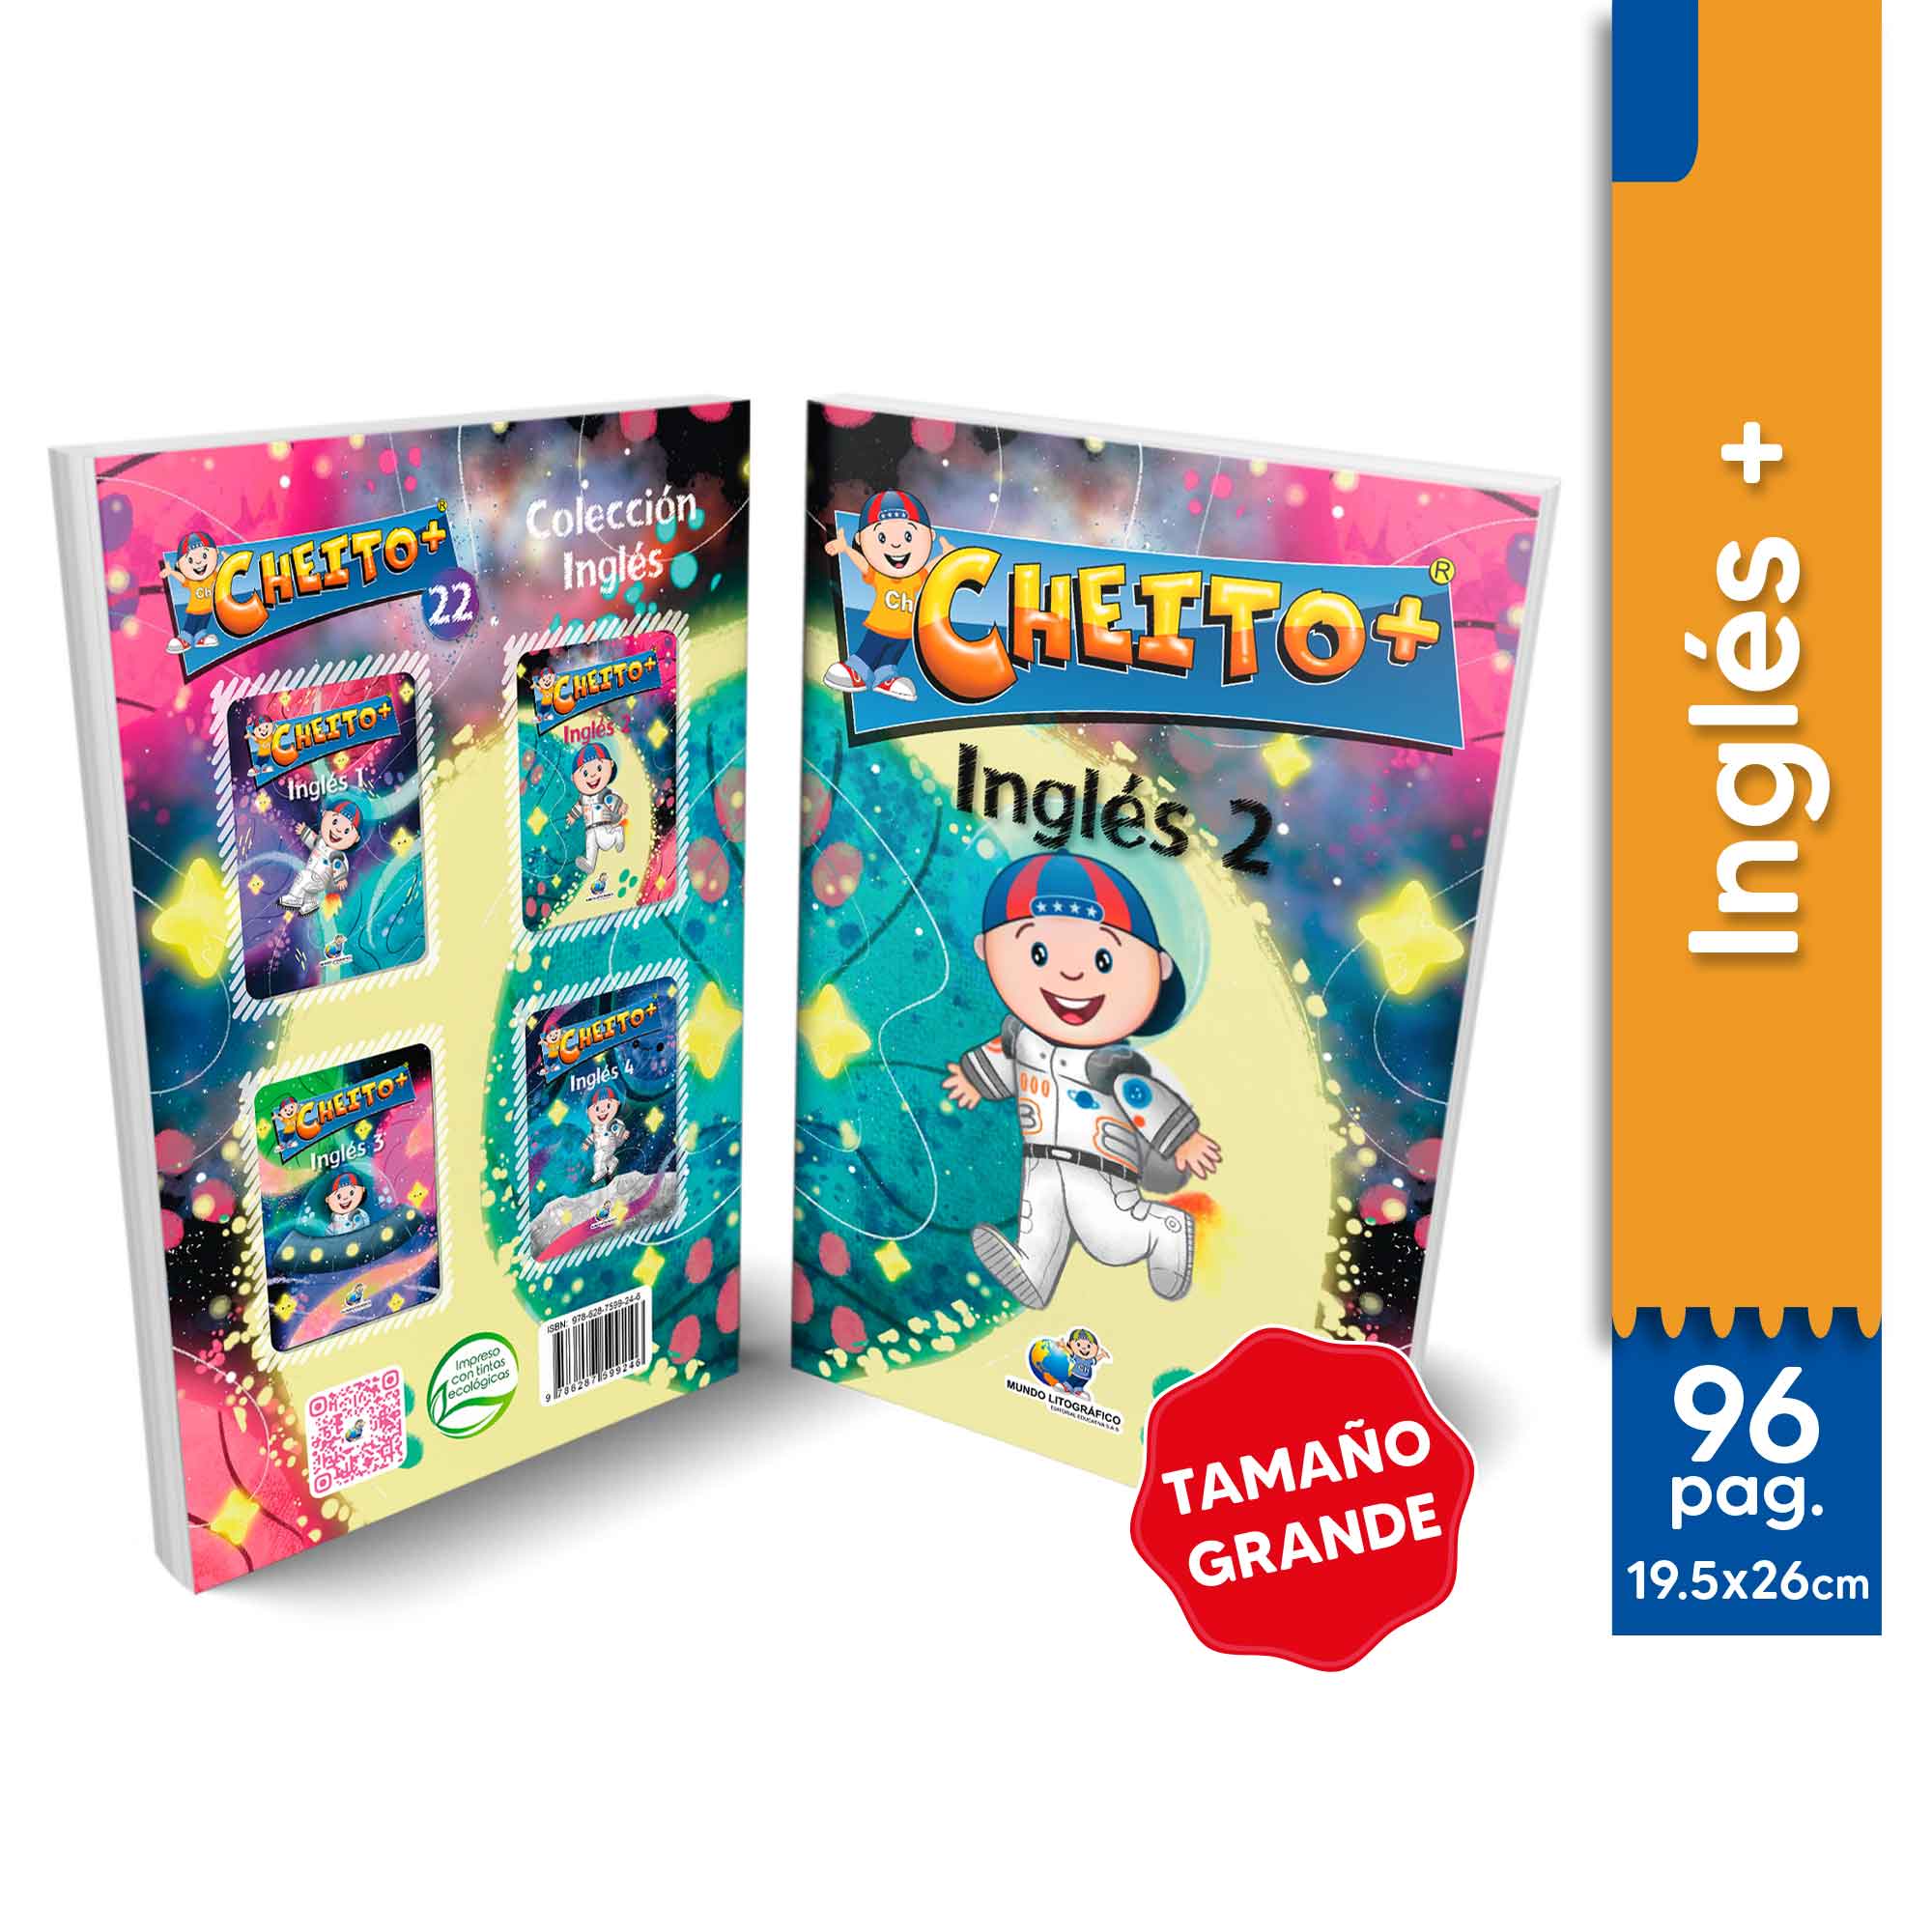 Cheito + Inglés 2